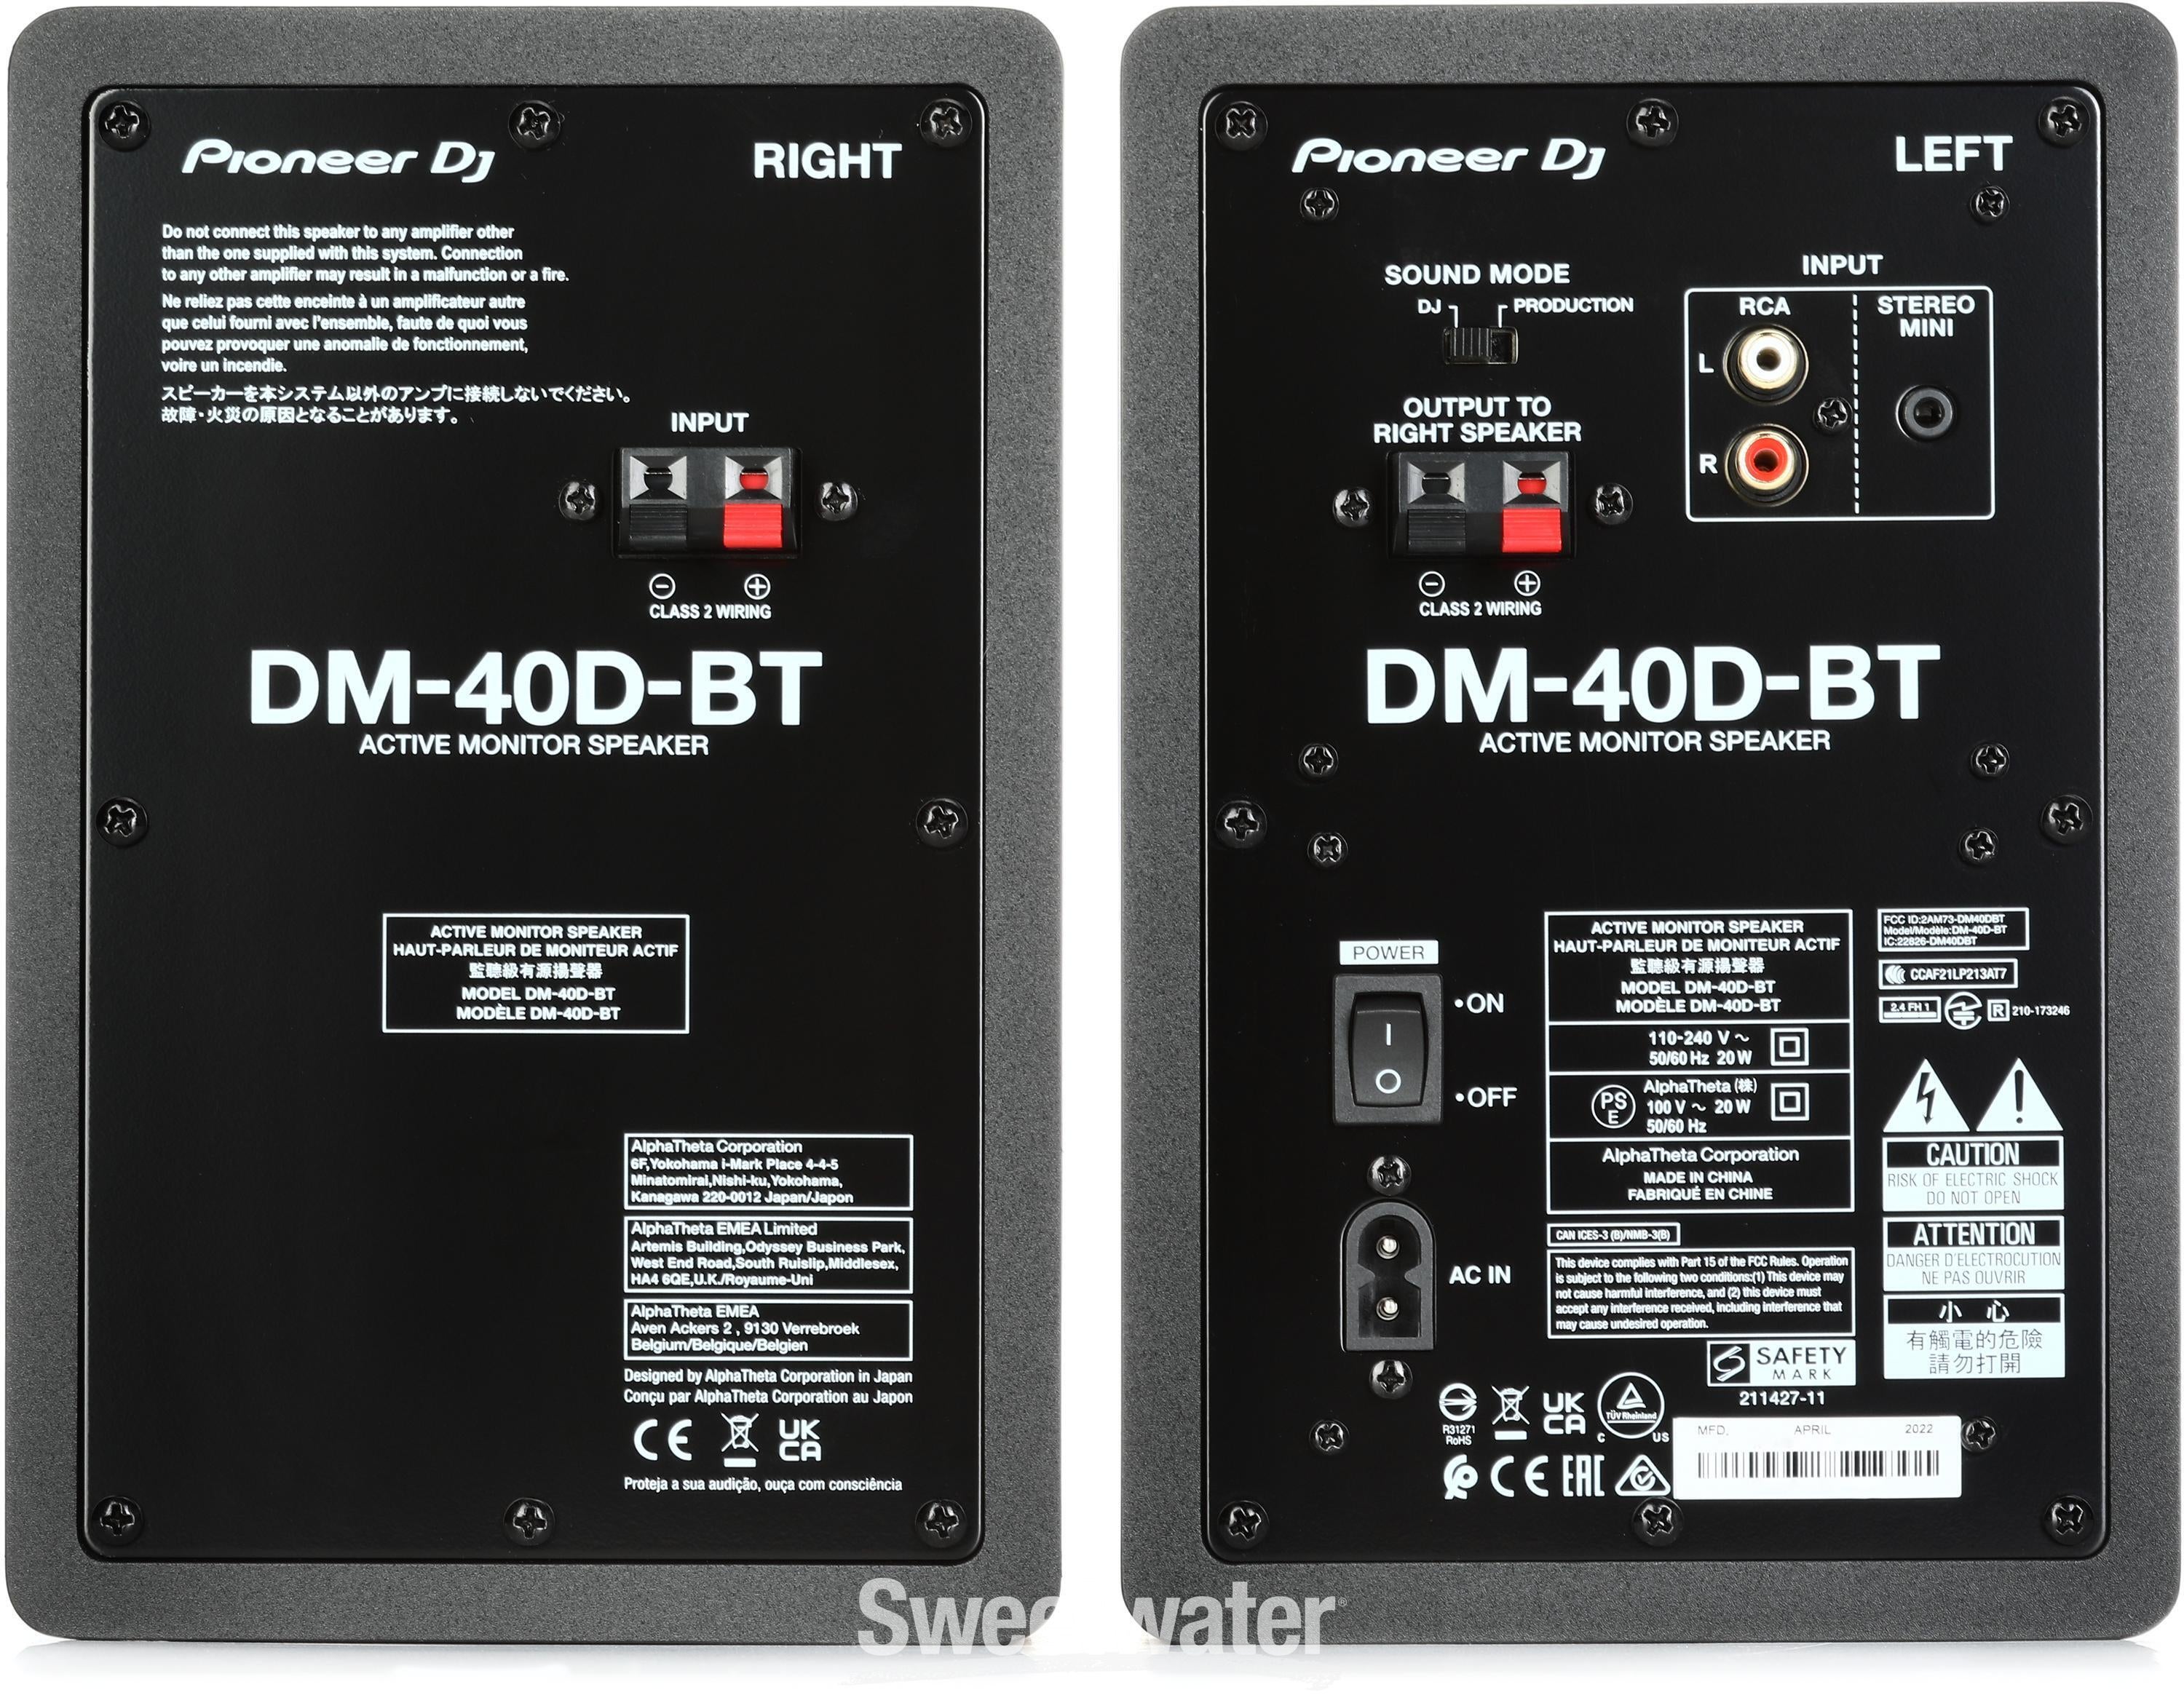 Pioneer DJ DM-40D-BT 4-inch Desktop Active Monitor Speaker with